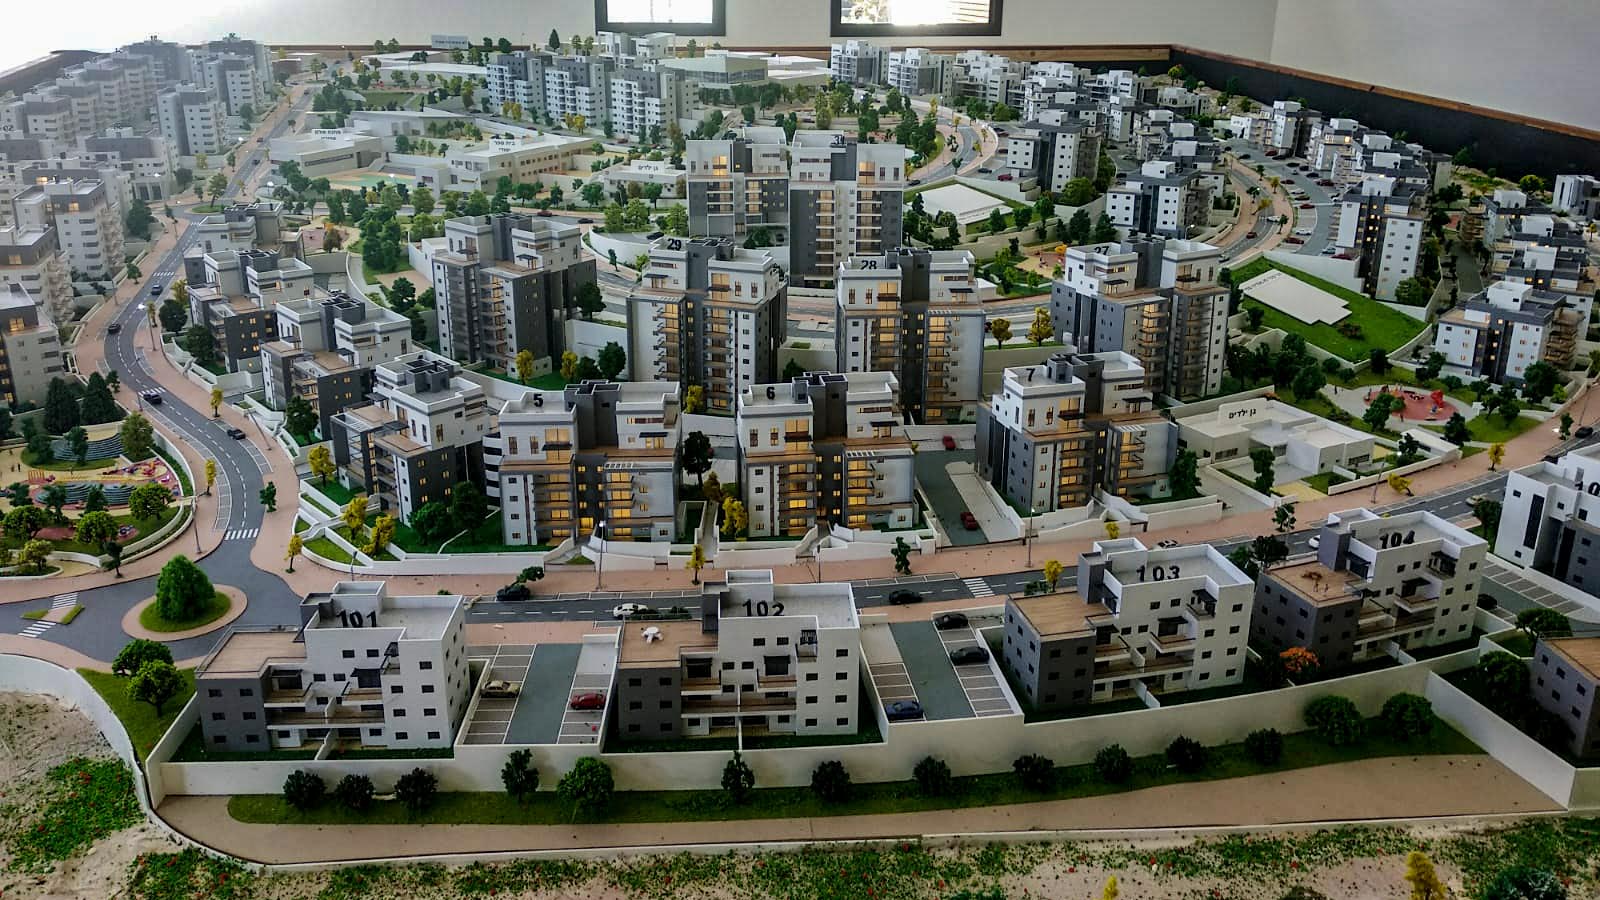 מודל של העיר חריש (צילום: עמר כהן)